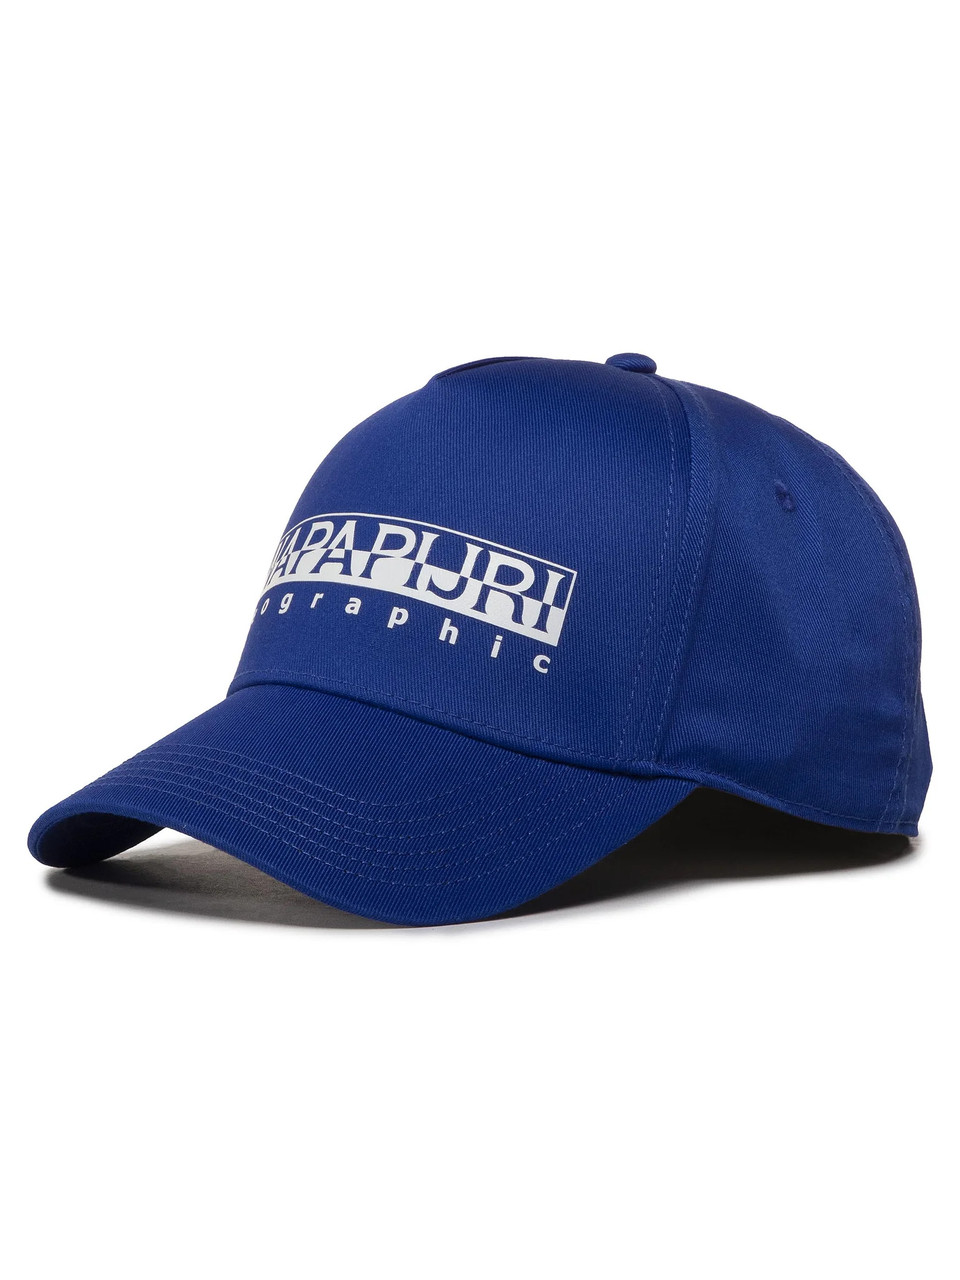 Стильна кепка Napapijri бейсболка з логотипом оригінал